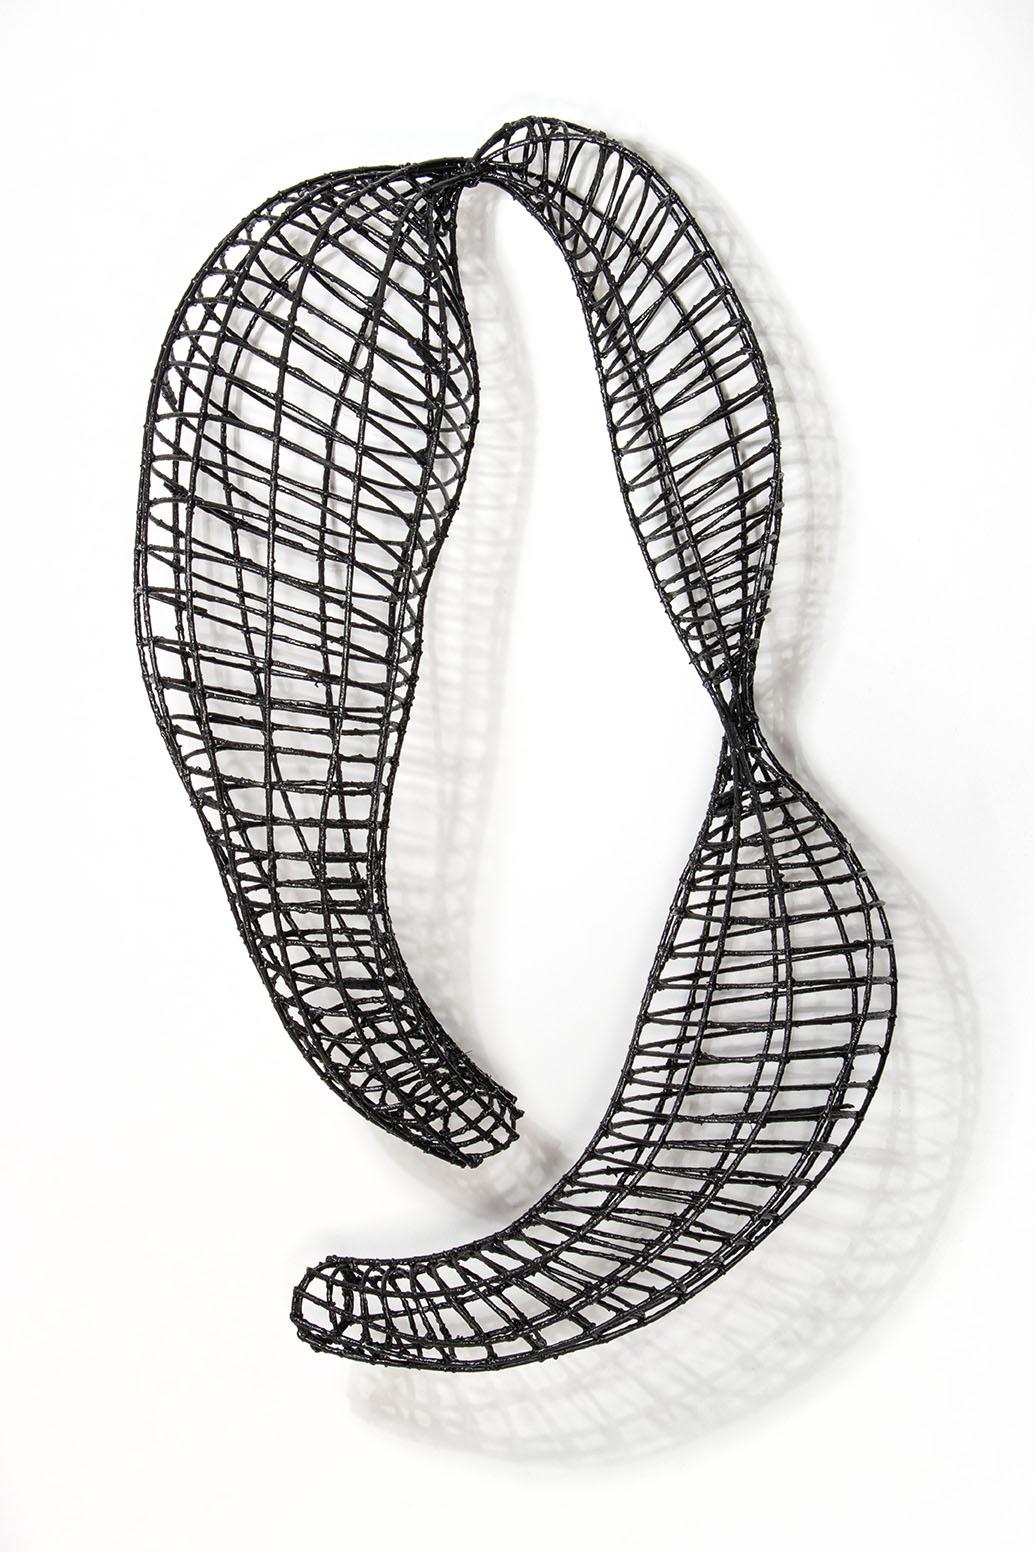 Eileen Braun Abstract Sculpture - Release